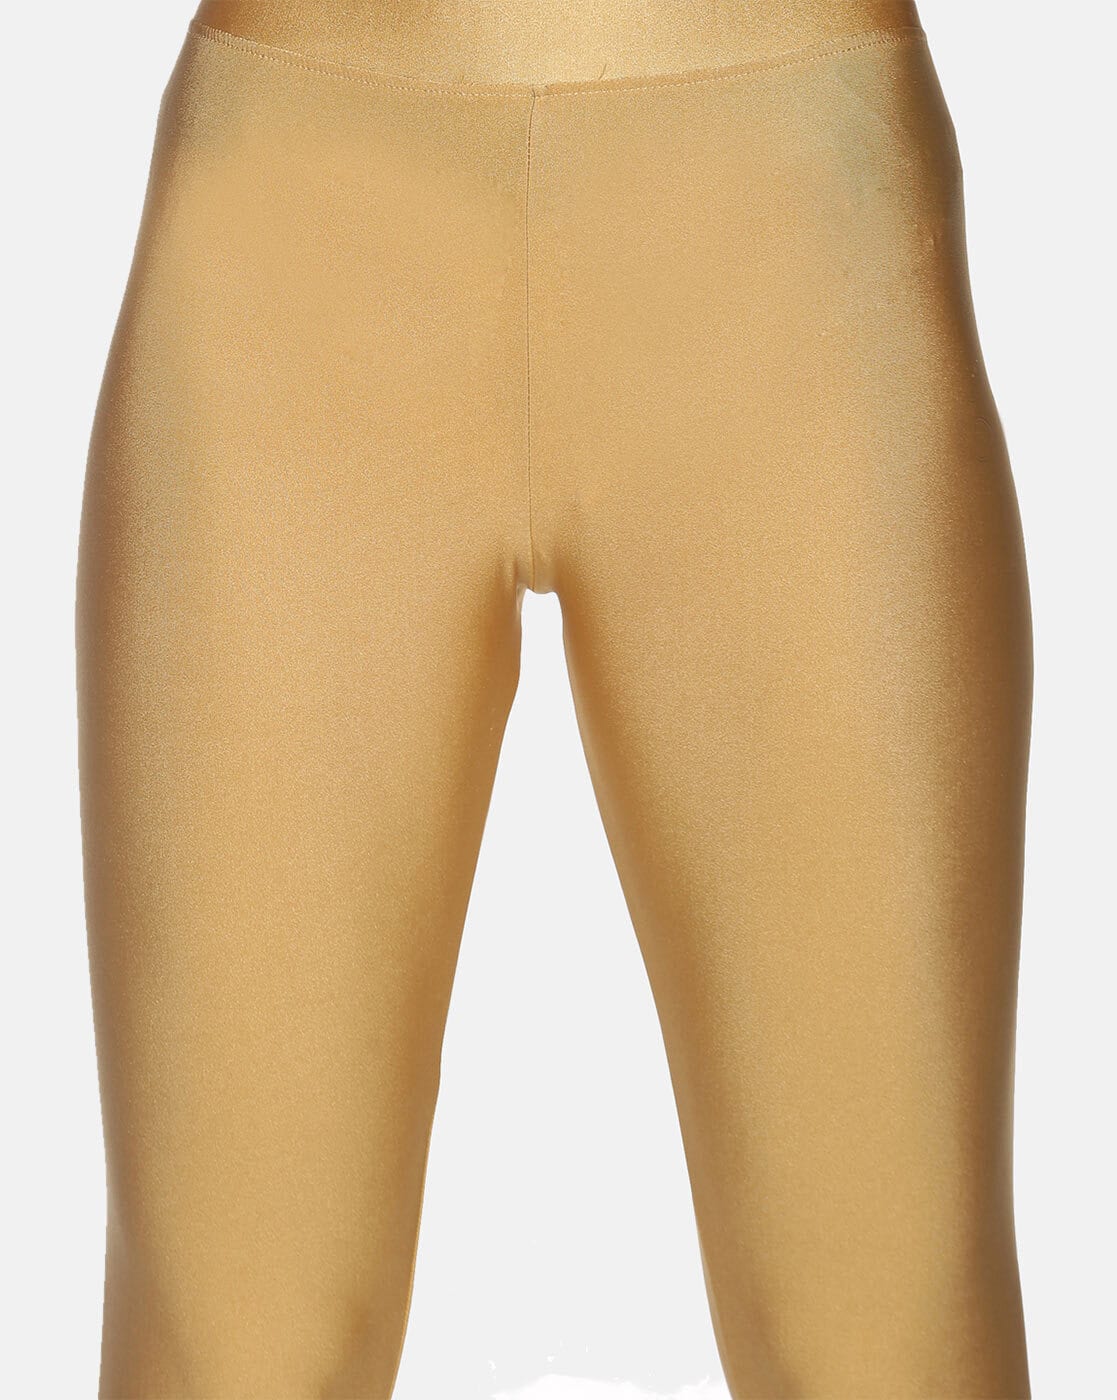 Buy Senora Women Black & Golden Printed Ankle Length Leggings - Leggings  for Women 634915 | Myntra